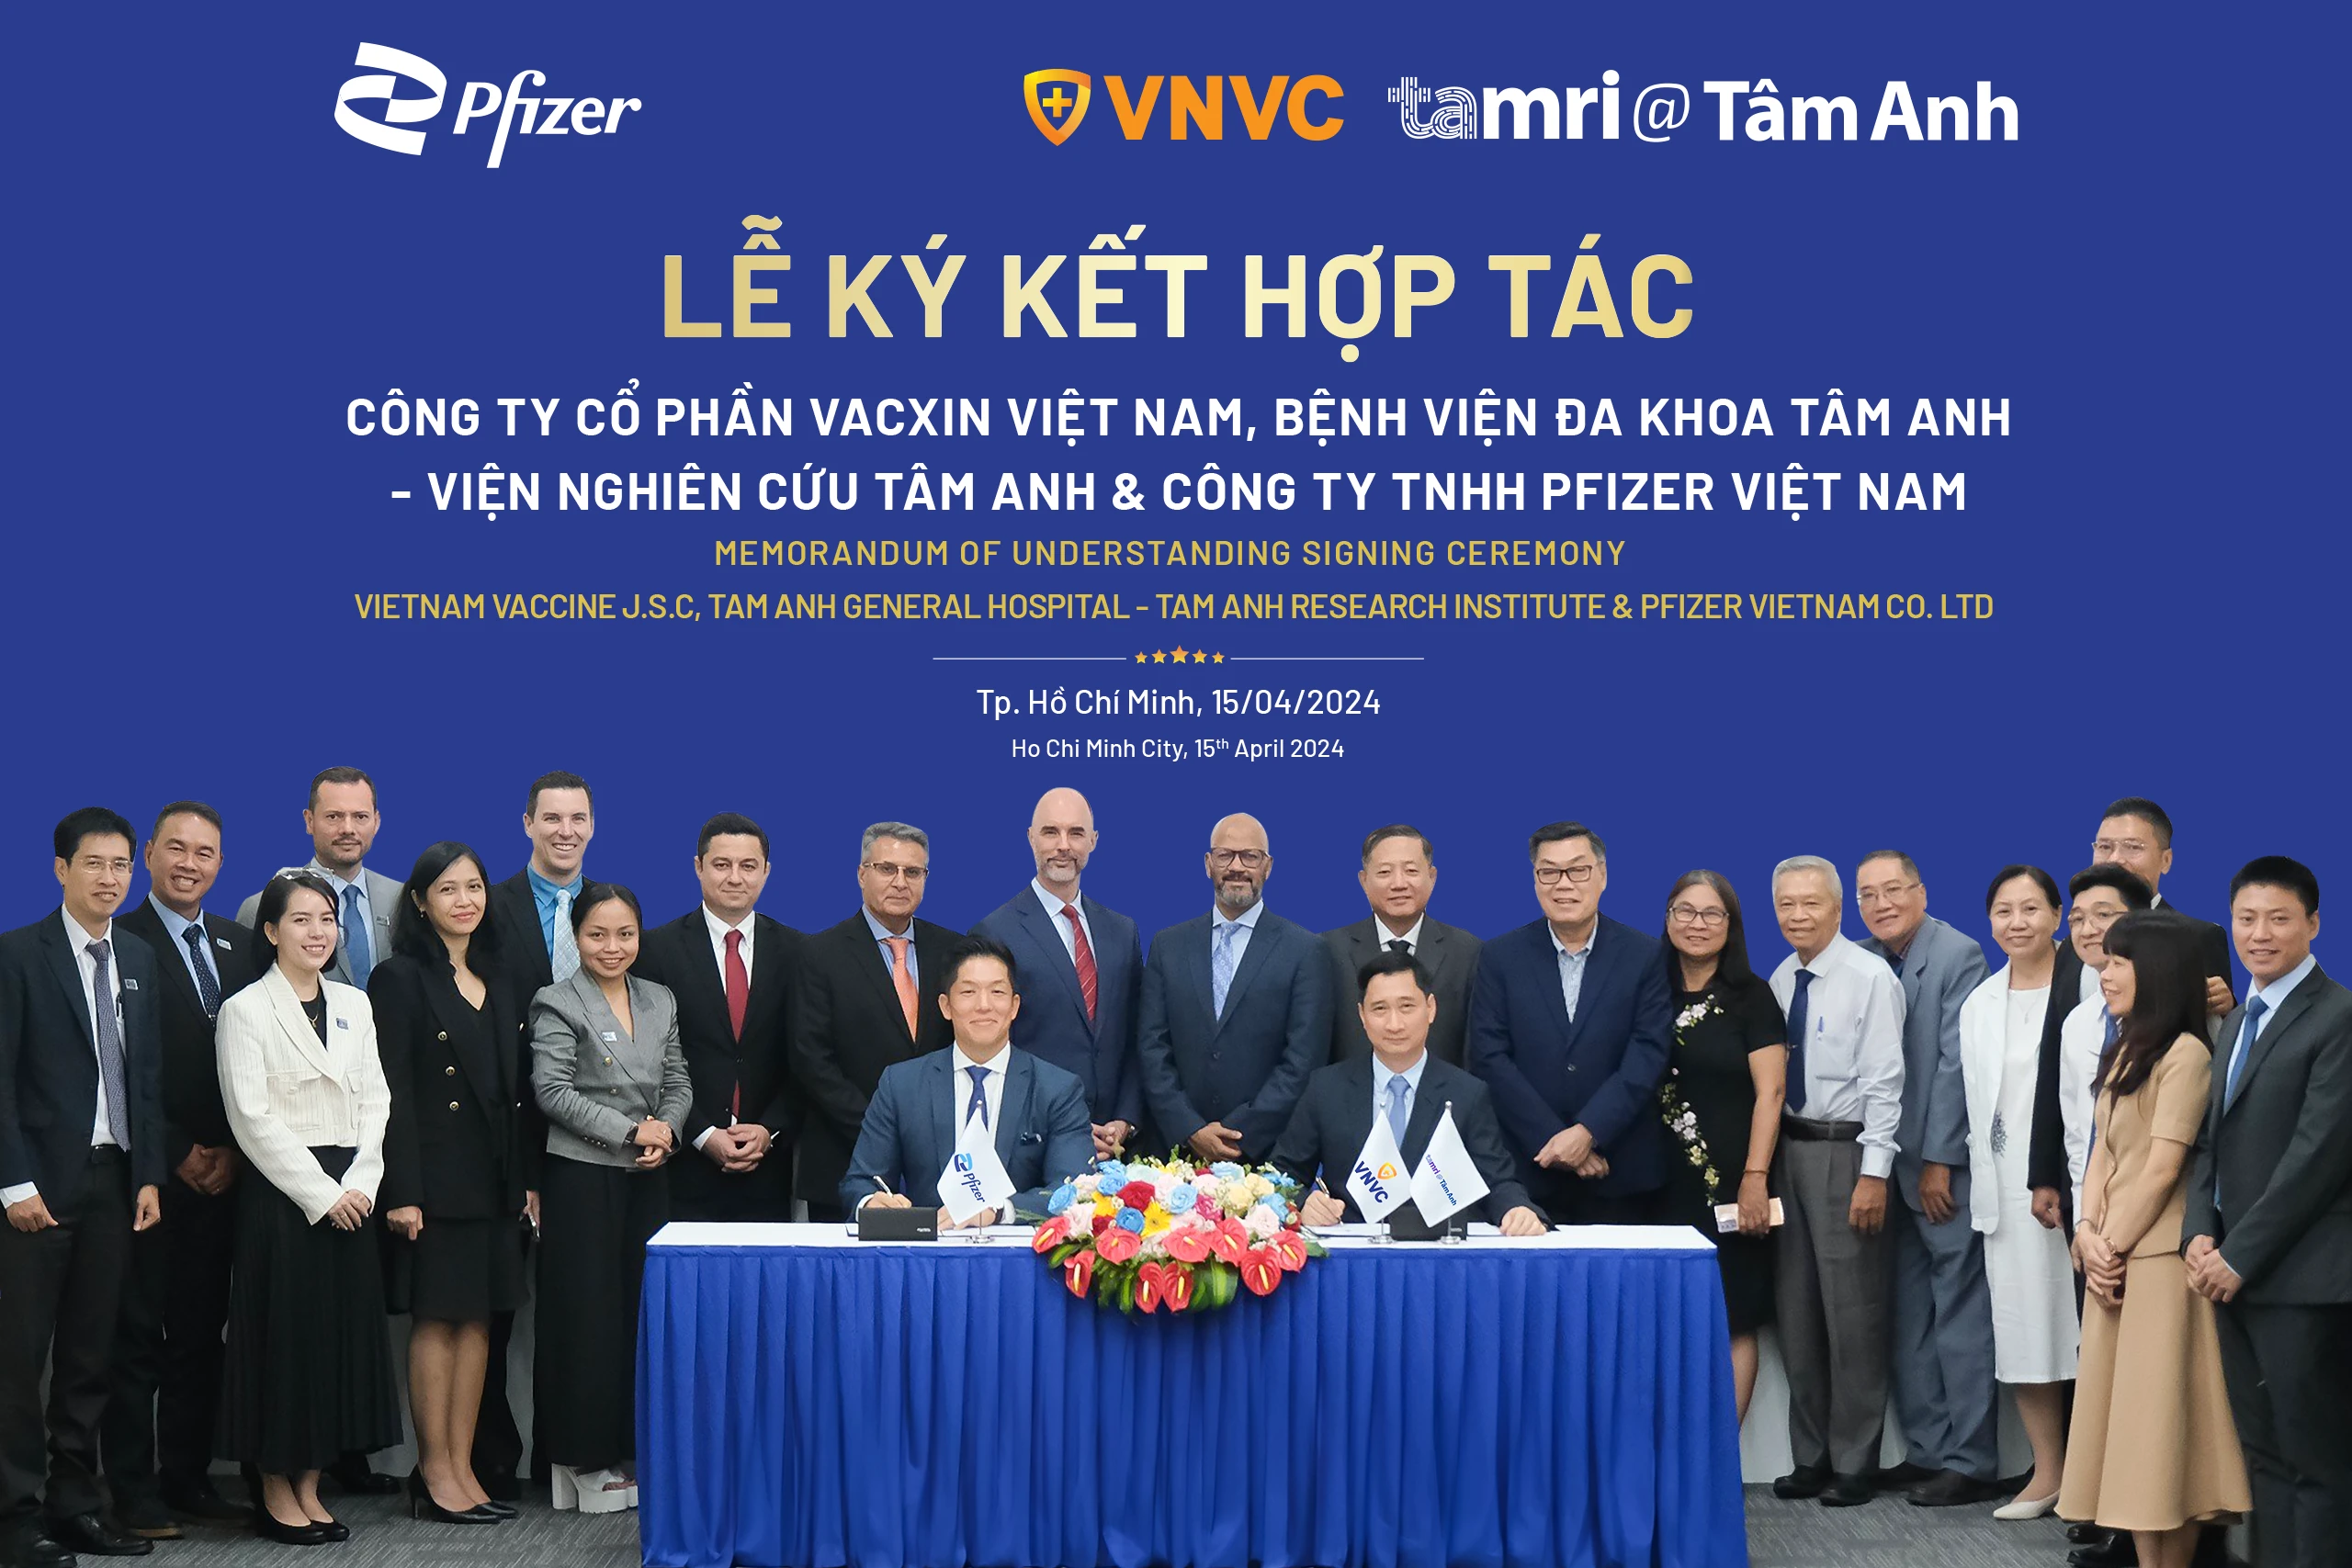 Hợp tác giữa Pfizer và VNVC